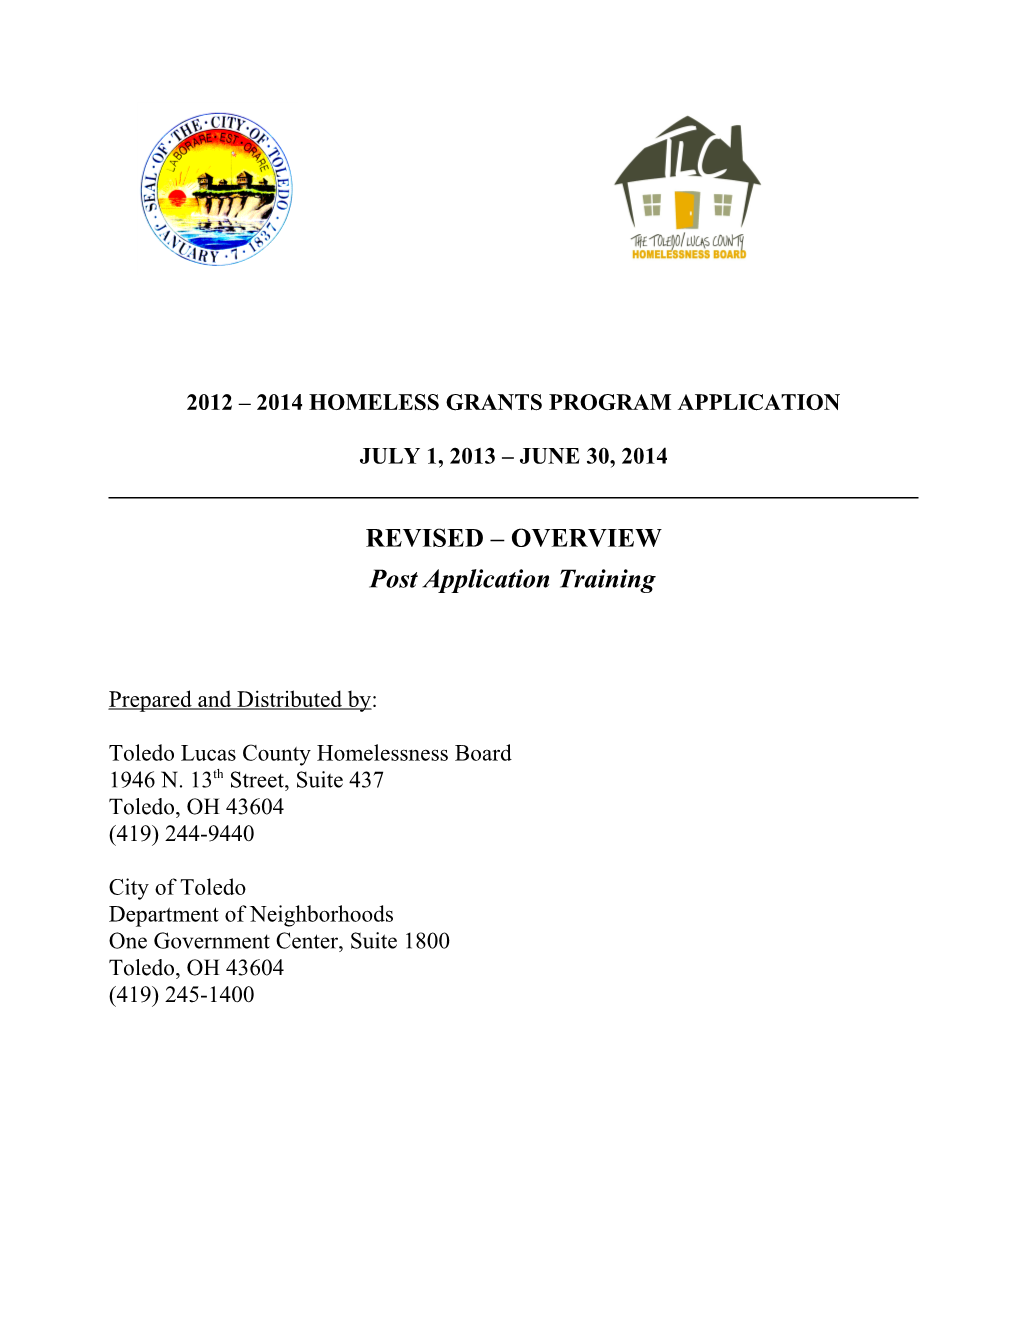 2012 2014 Homeless Grants Program Application